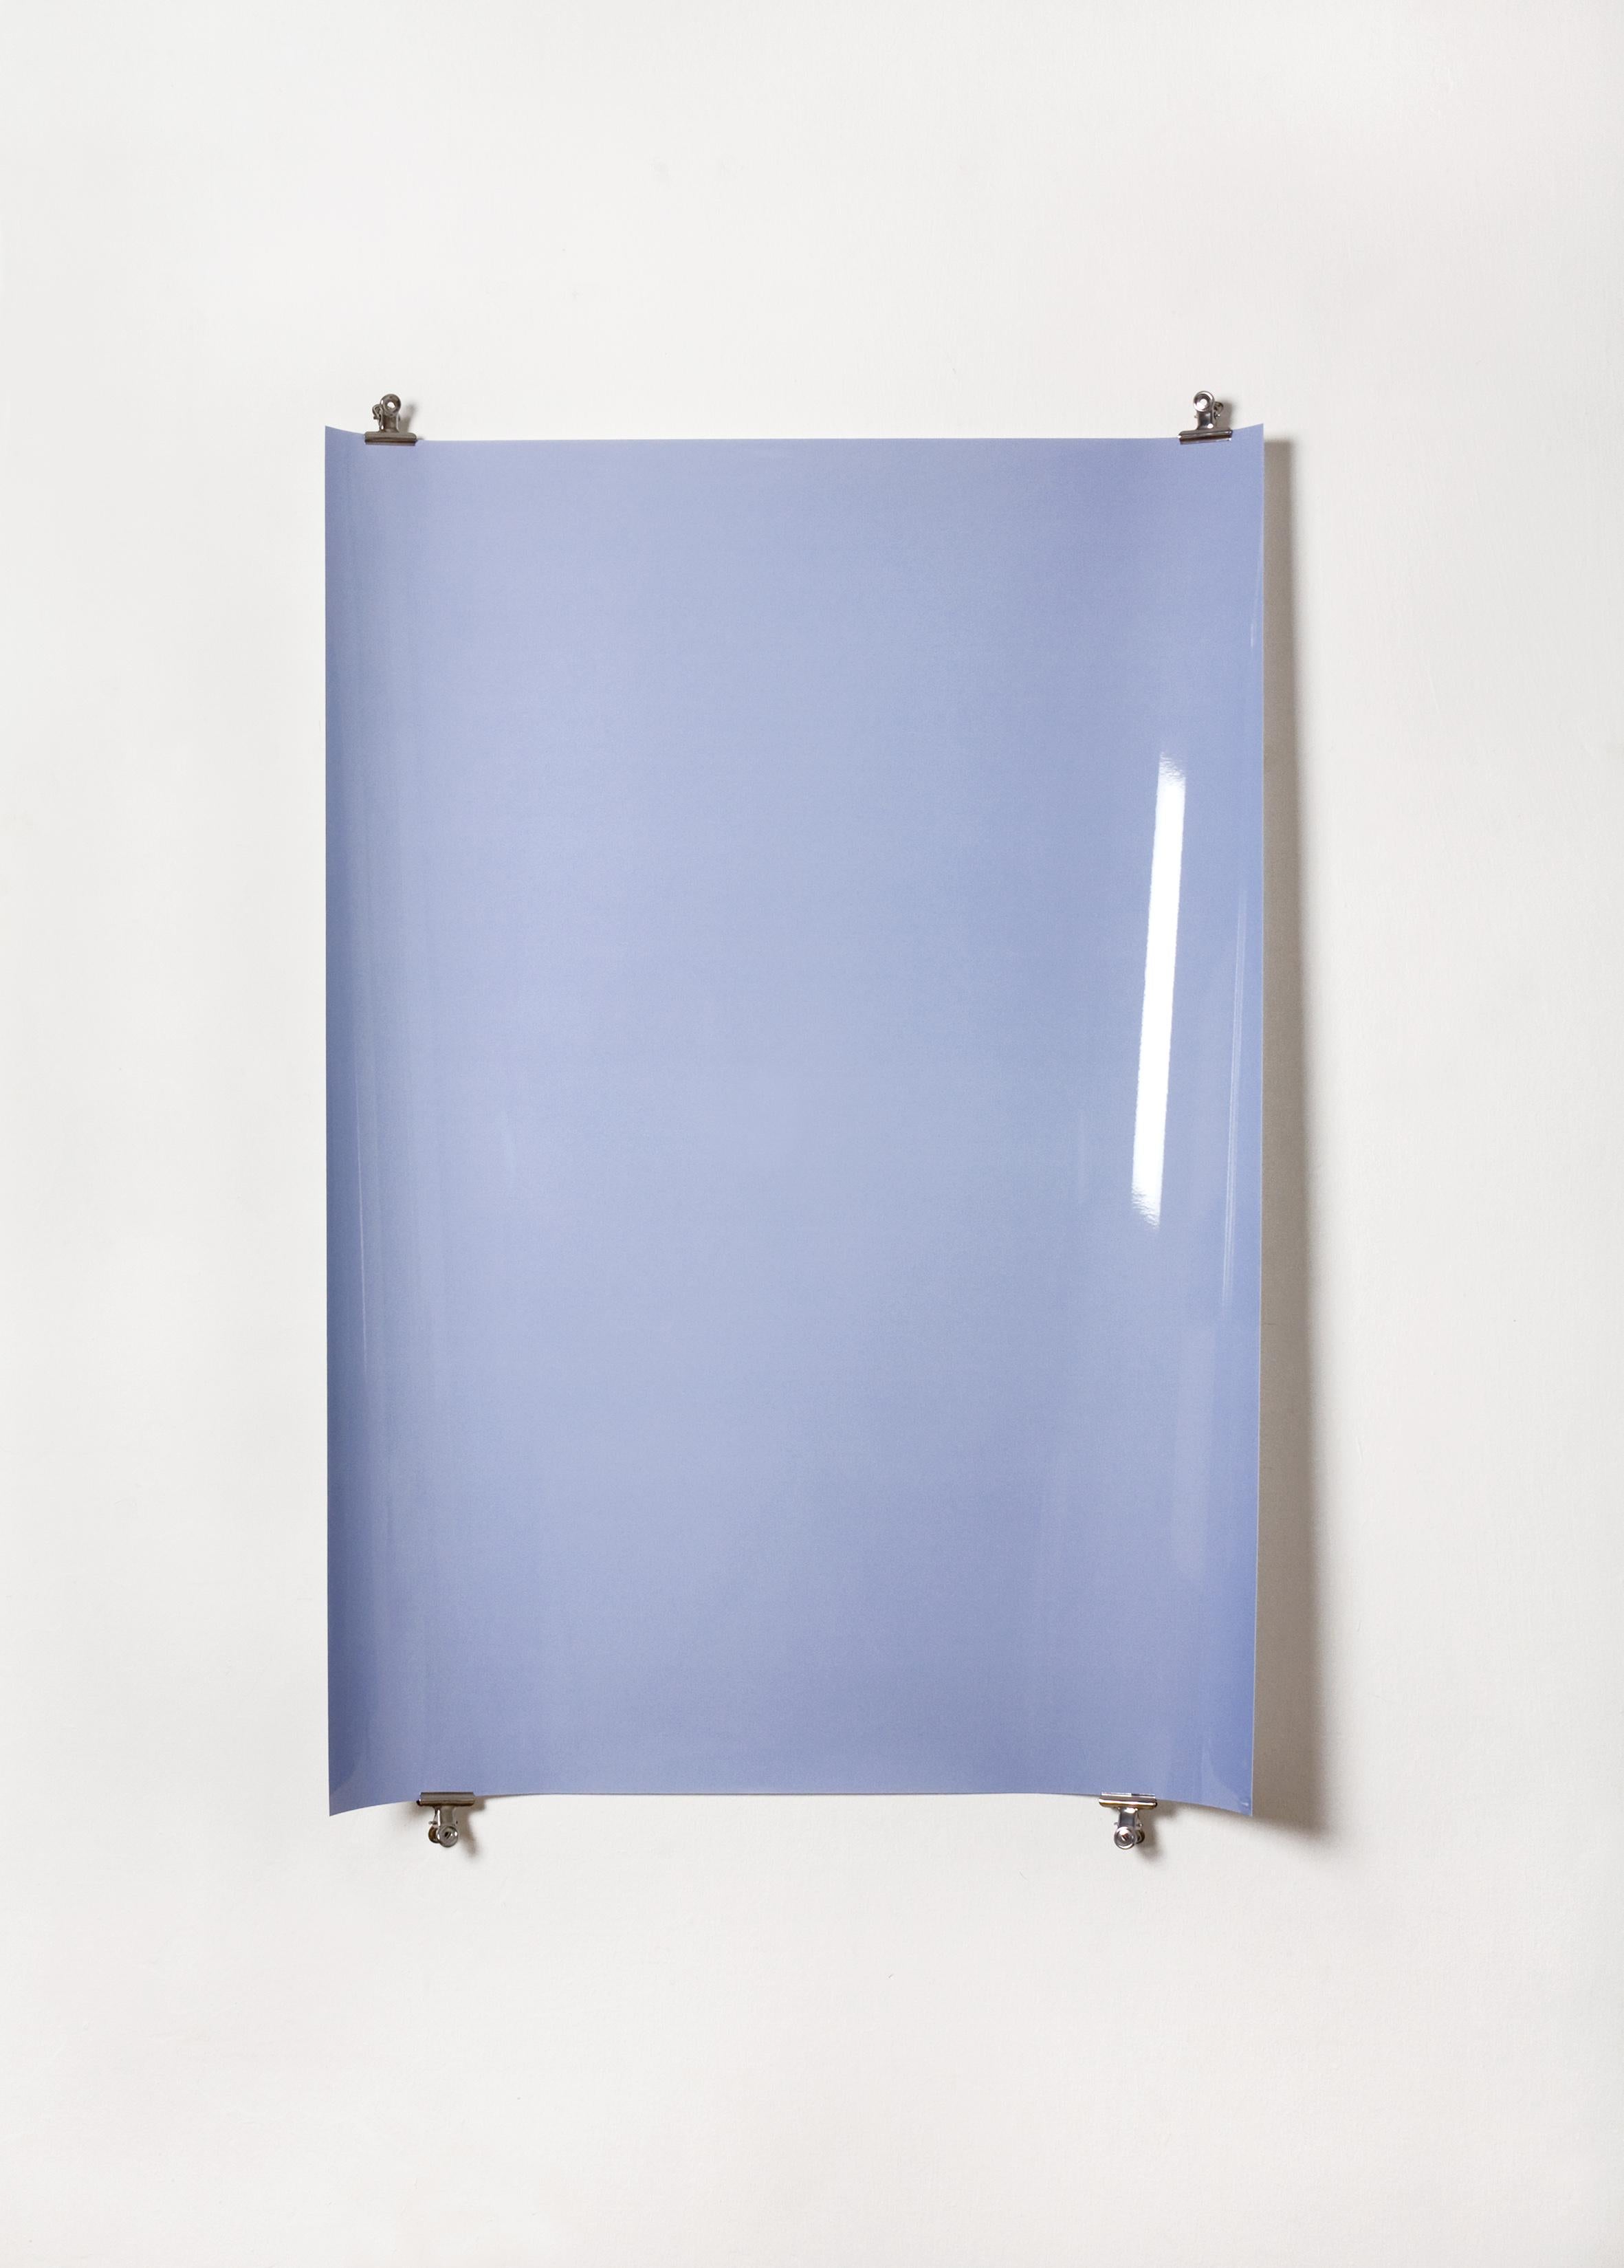 Ombres sur papier, n° 2 - Photographie abstraite contemporaine en camaïeu de bleus - Bleu Abstract Photograph par Ulrike Königshofer